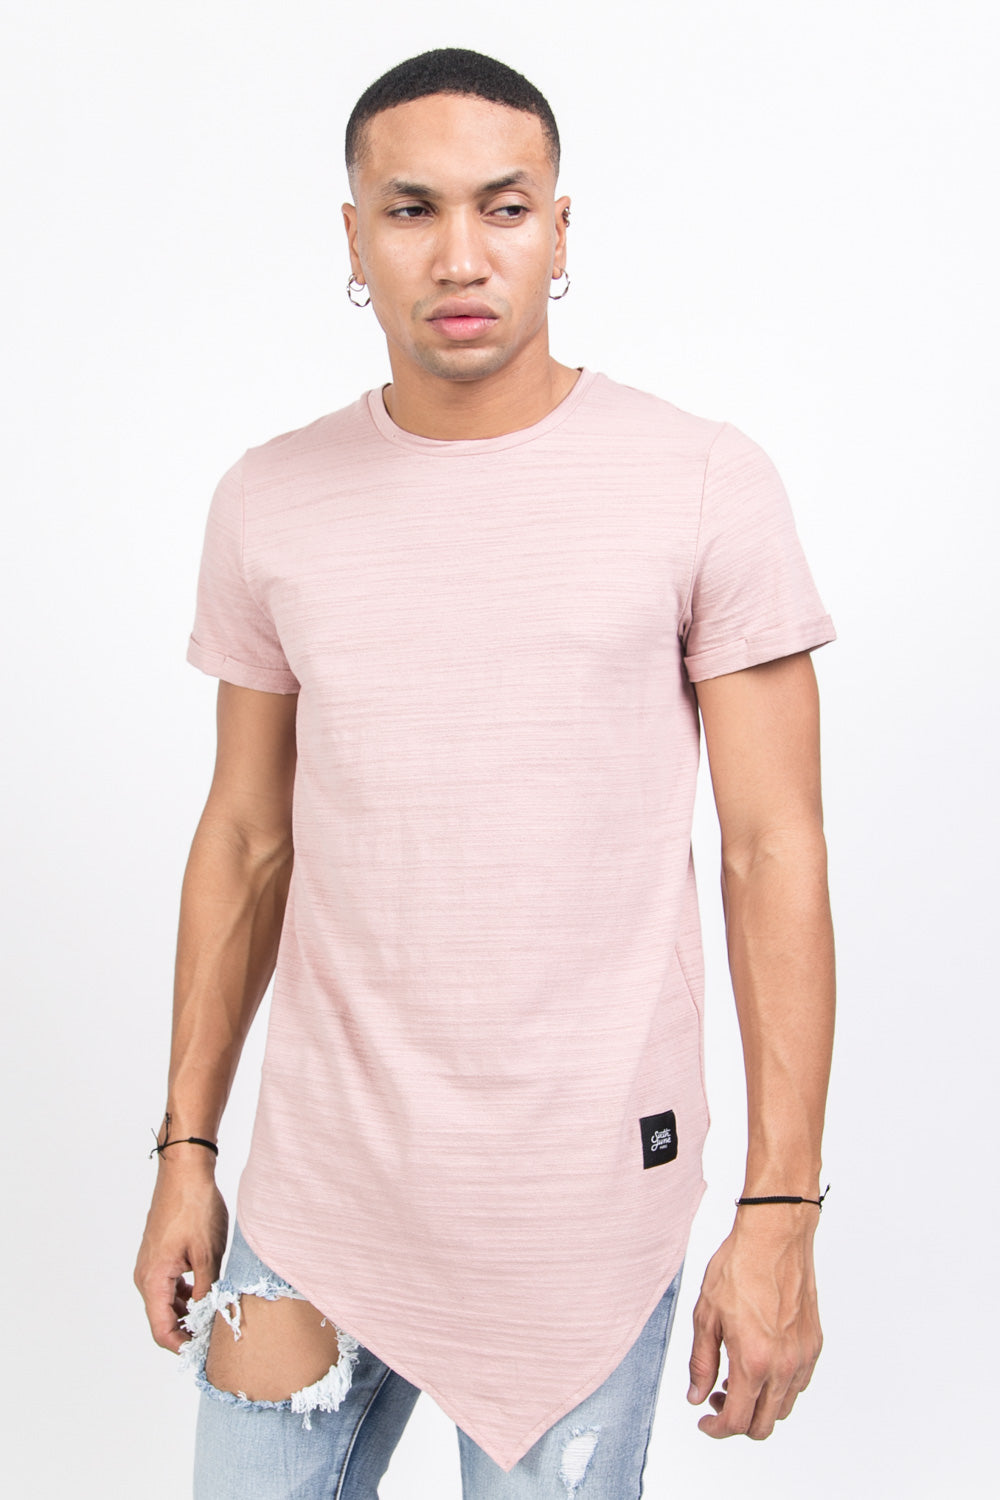 Sixth June - T-shirt pointe texturé rose